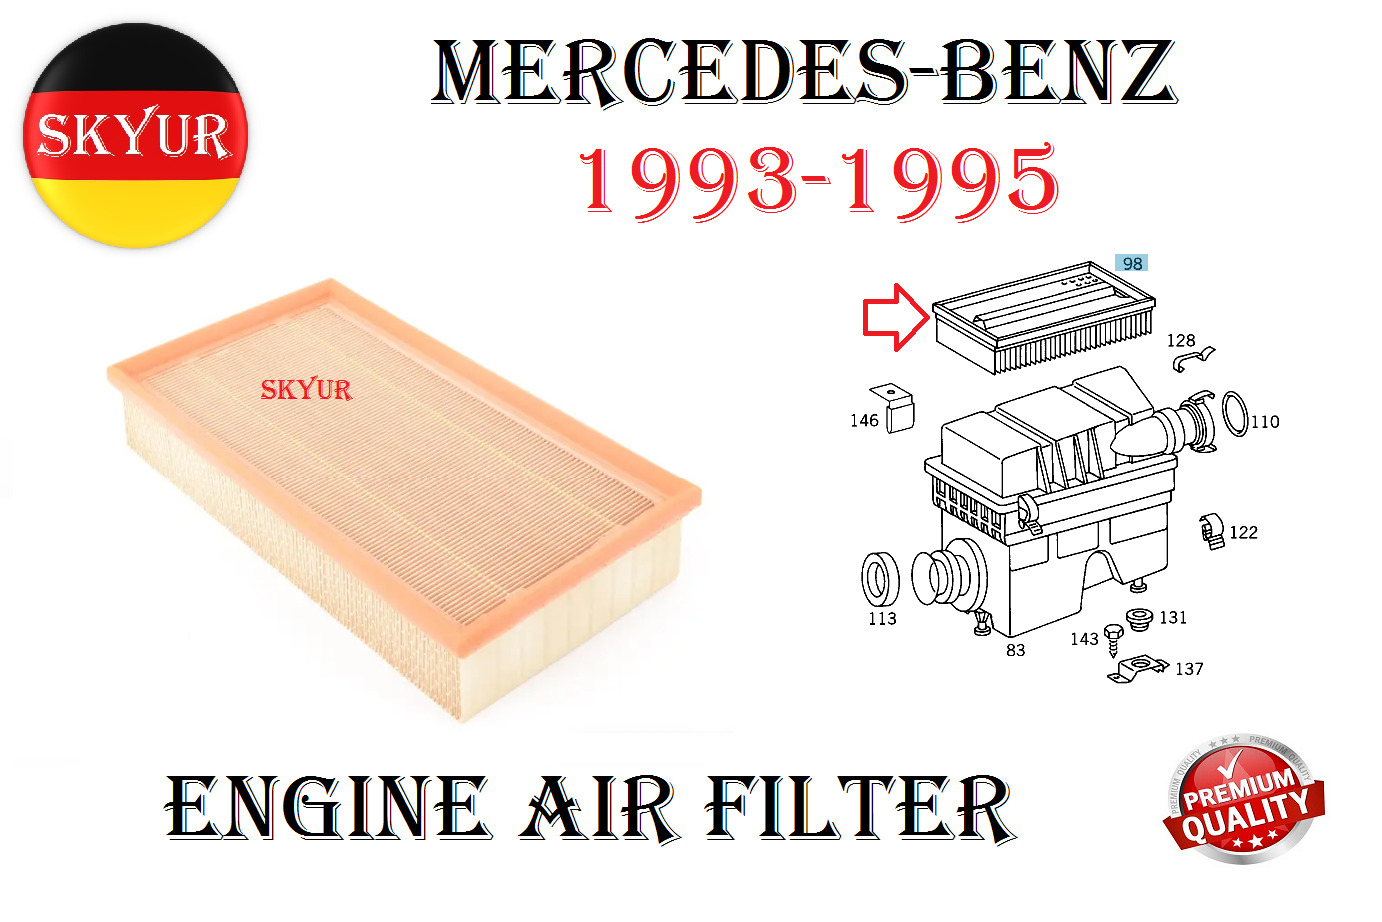 Engine Air Filter For 1993-1995 Mercedes-Benz 300CE, 300E, 300TE, E320 Premium